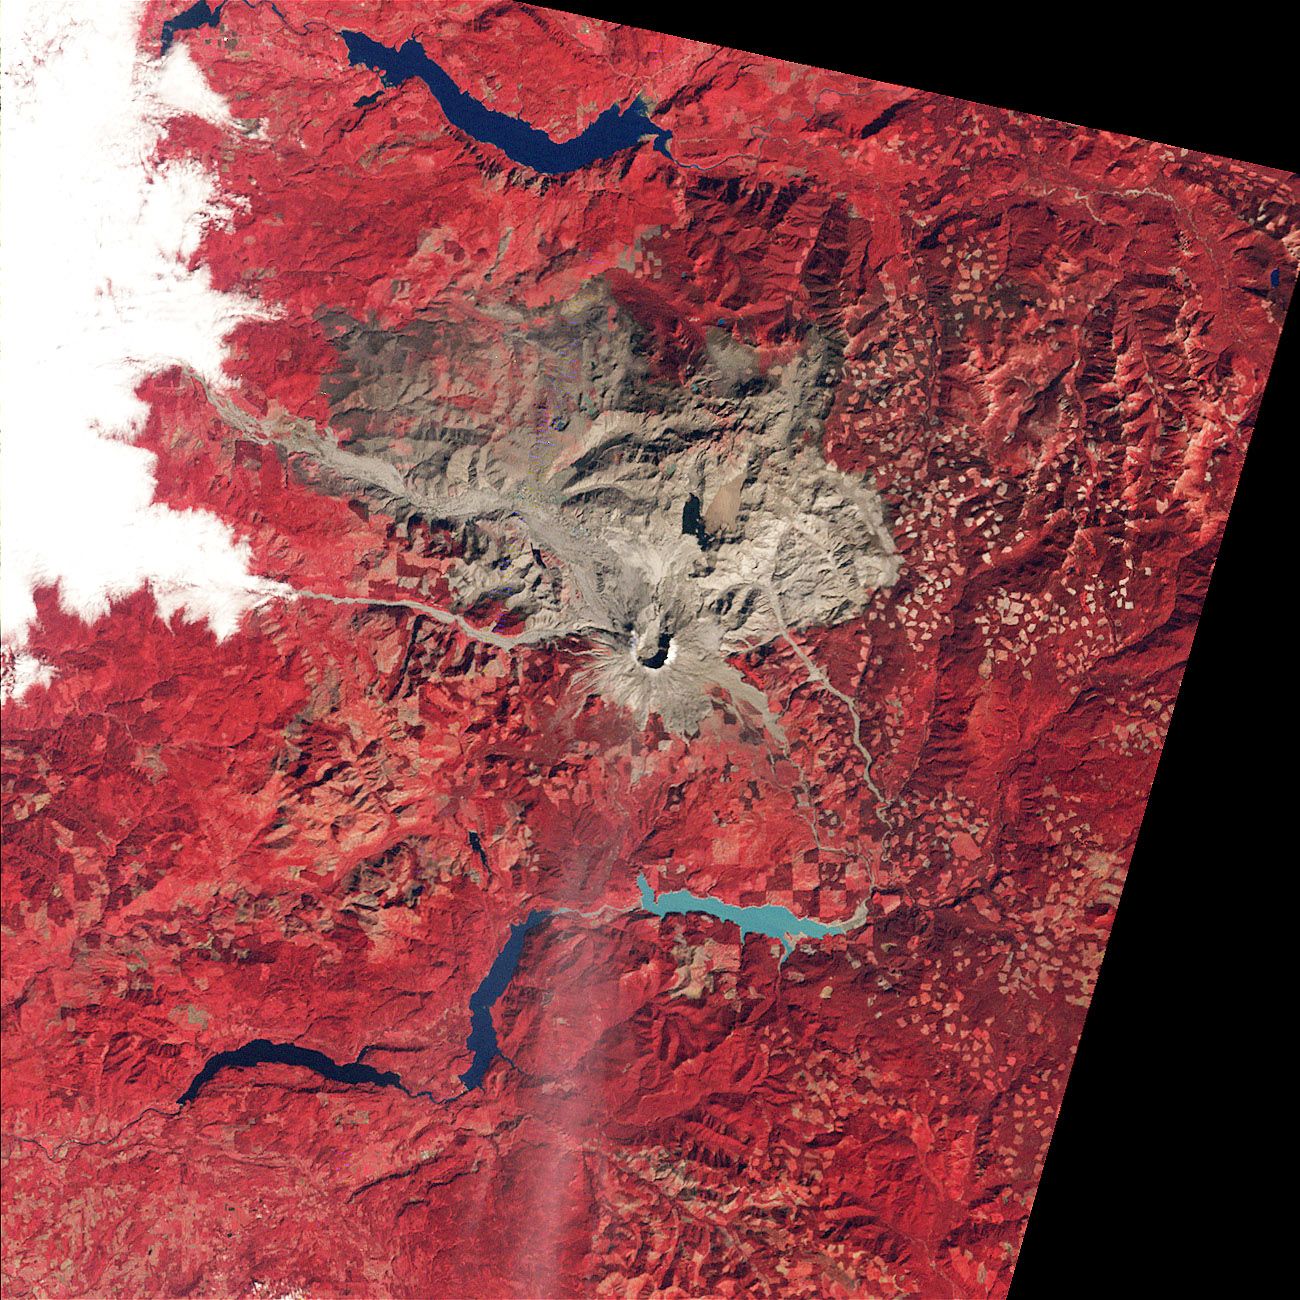 Auf rotem Untergrund sind in grau-braun der Mount St. Helens und die Folgen seines Ausbruchs zu sehen.